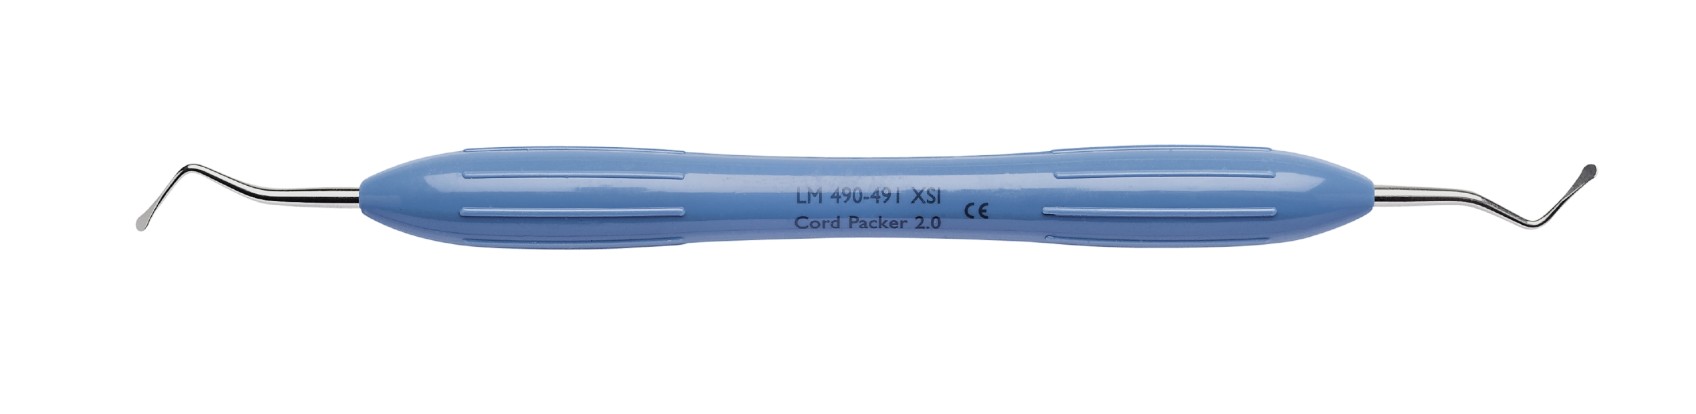 Инструмент для укладки ретракционной нити от 2.0 до 2.6мм  LM 490-491 XSI